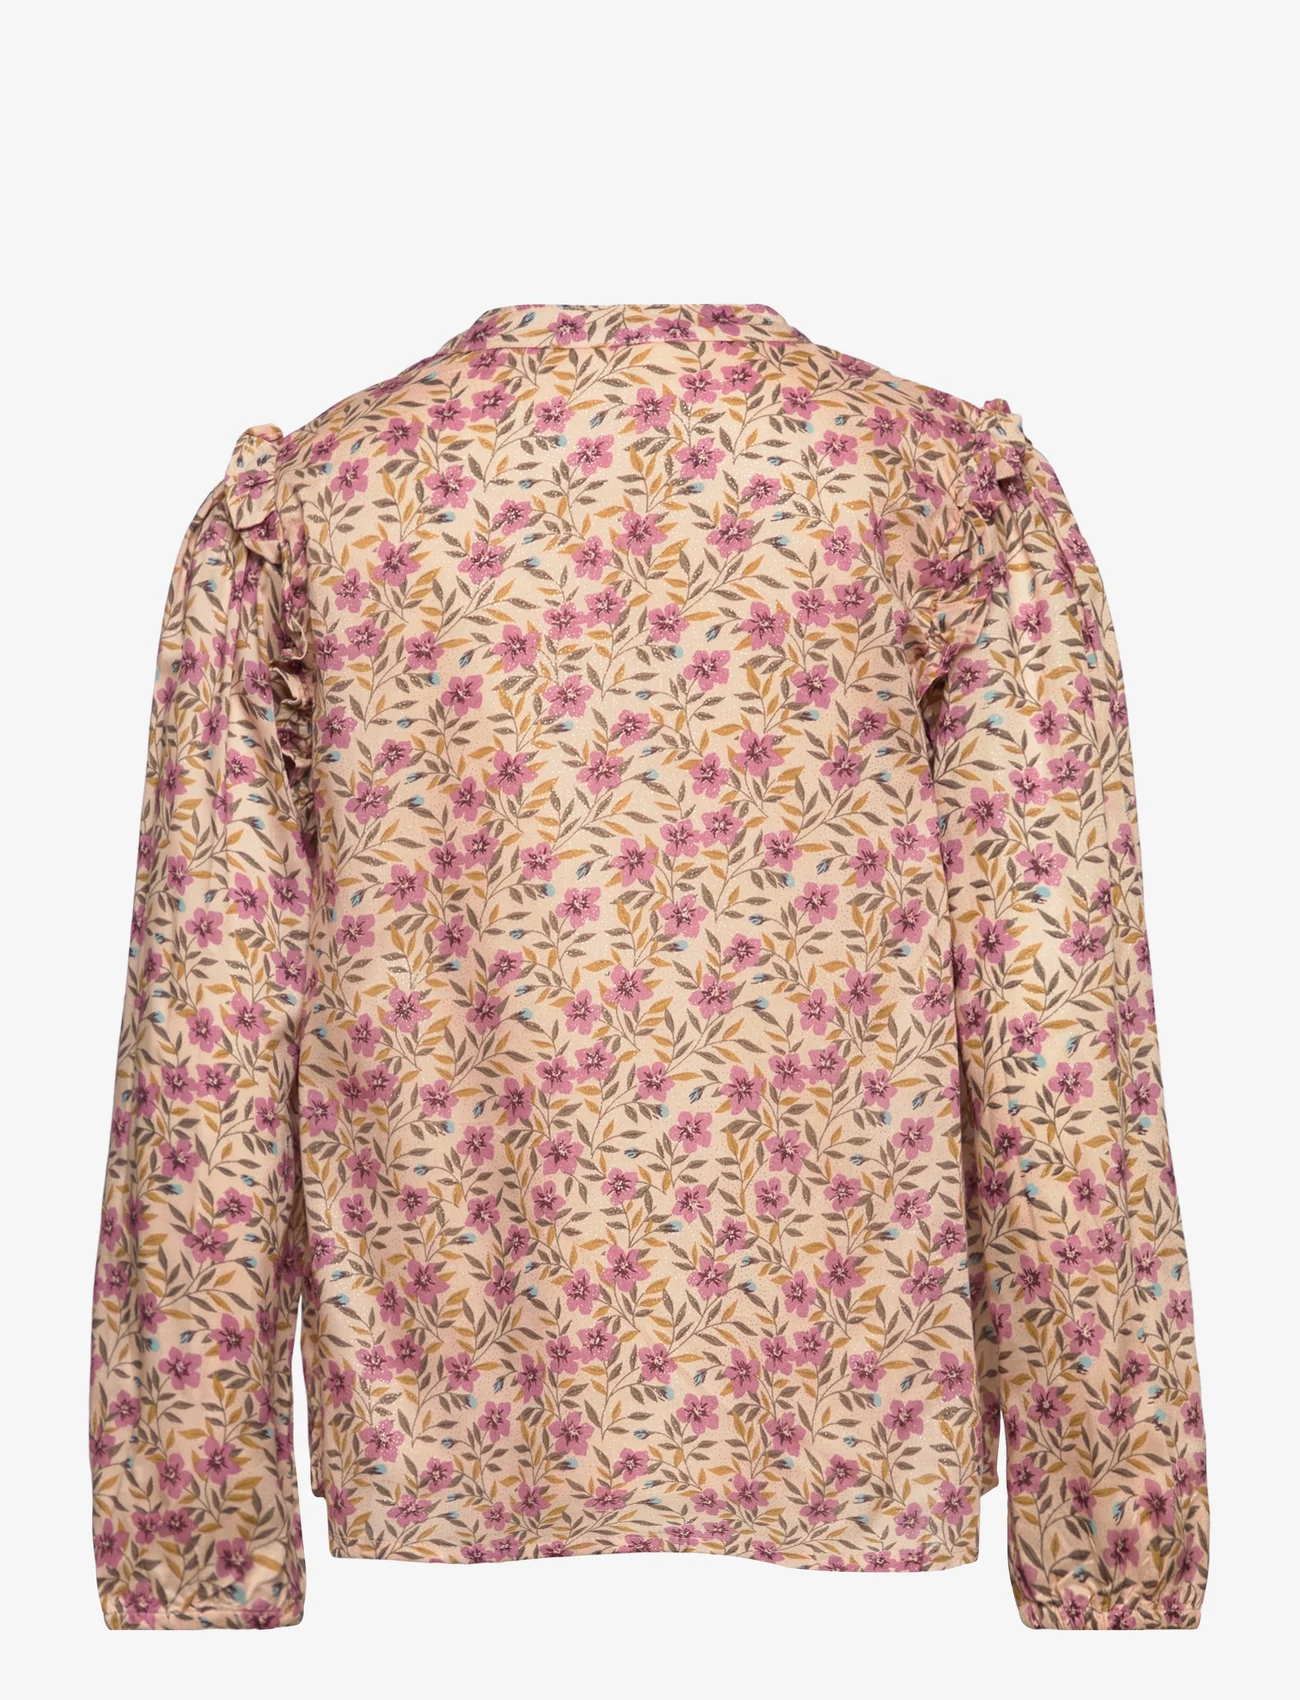 En Fant - Shirt Flower Woven - zomerkoopjes - rose dust - 1